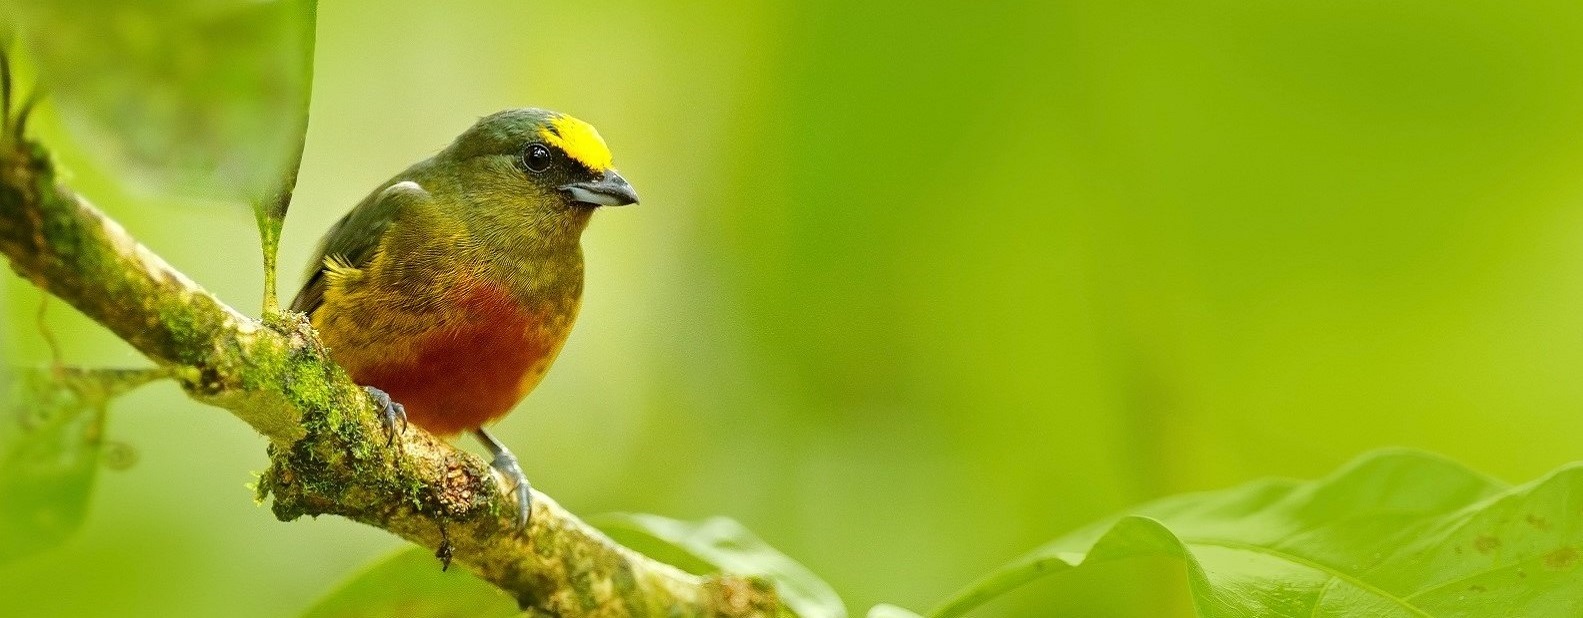 Panama Bird